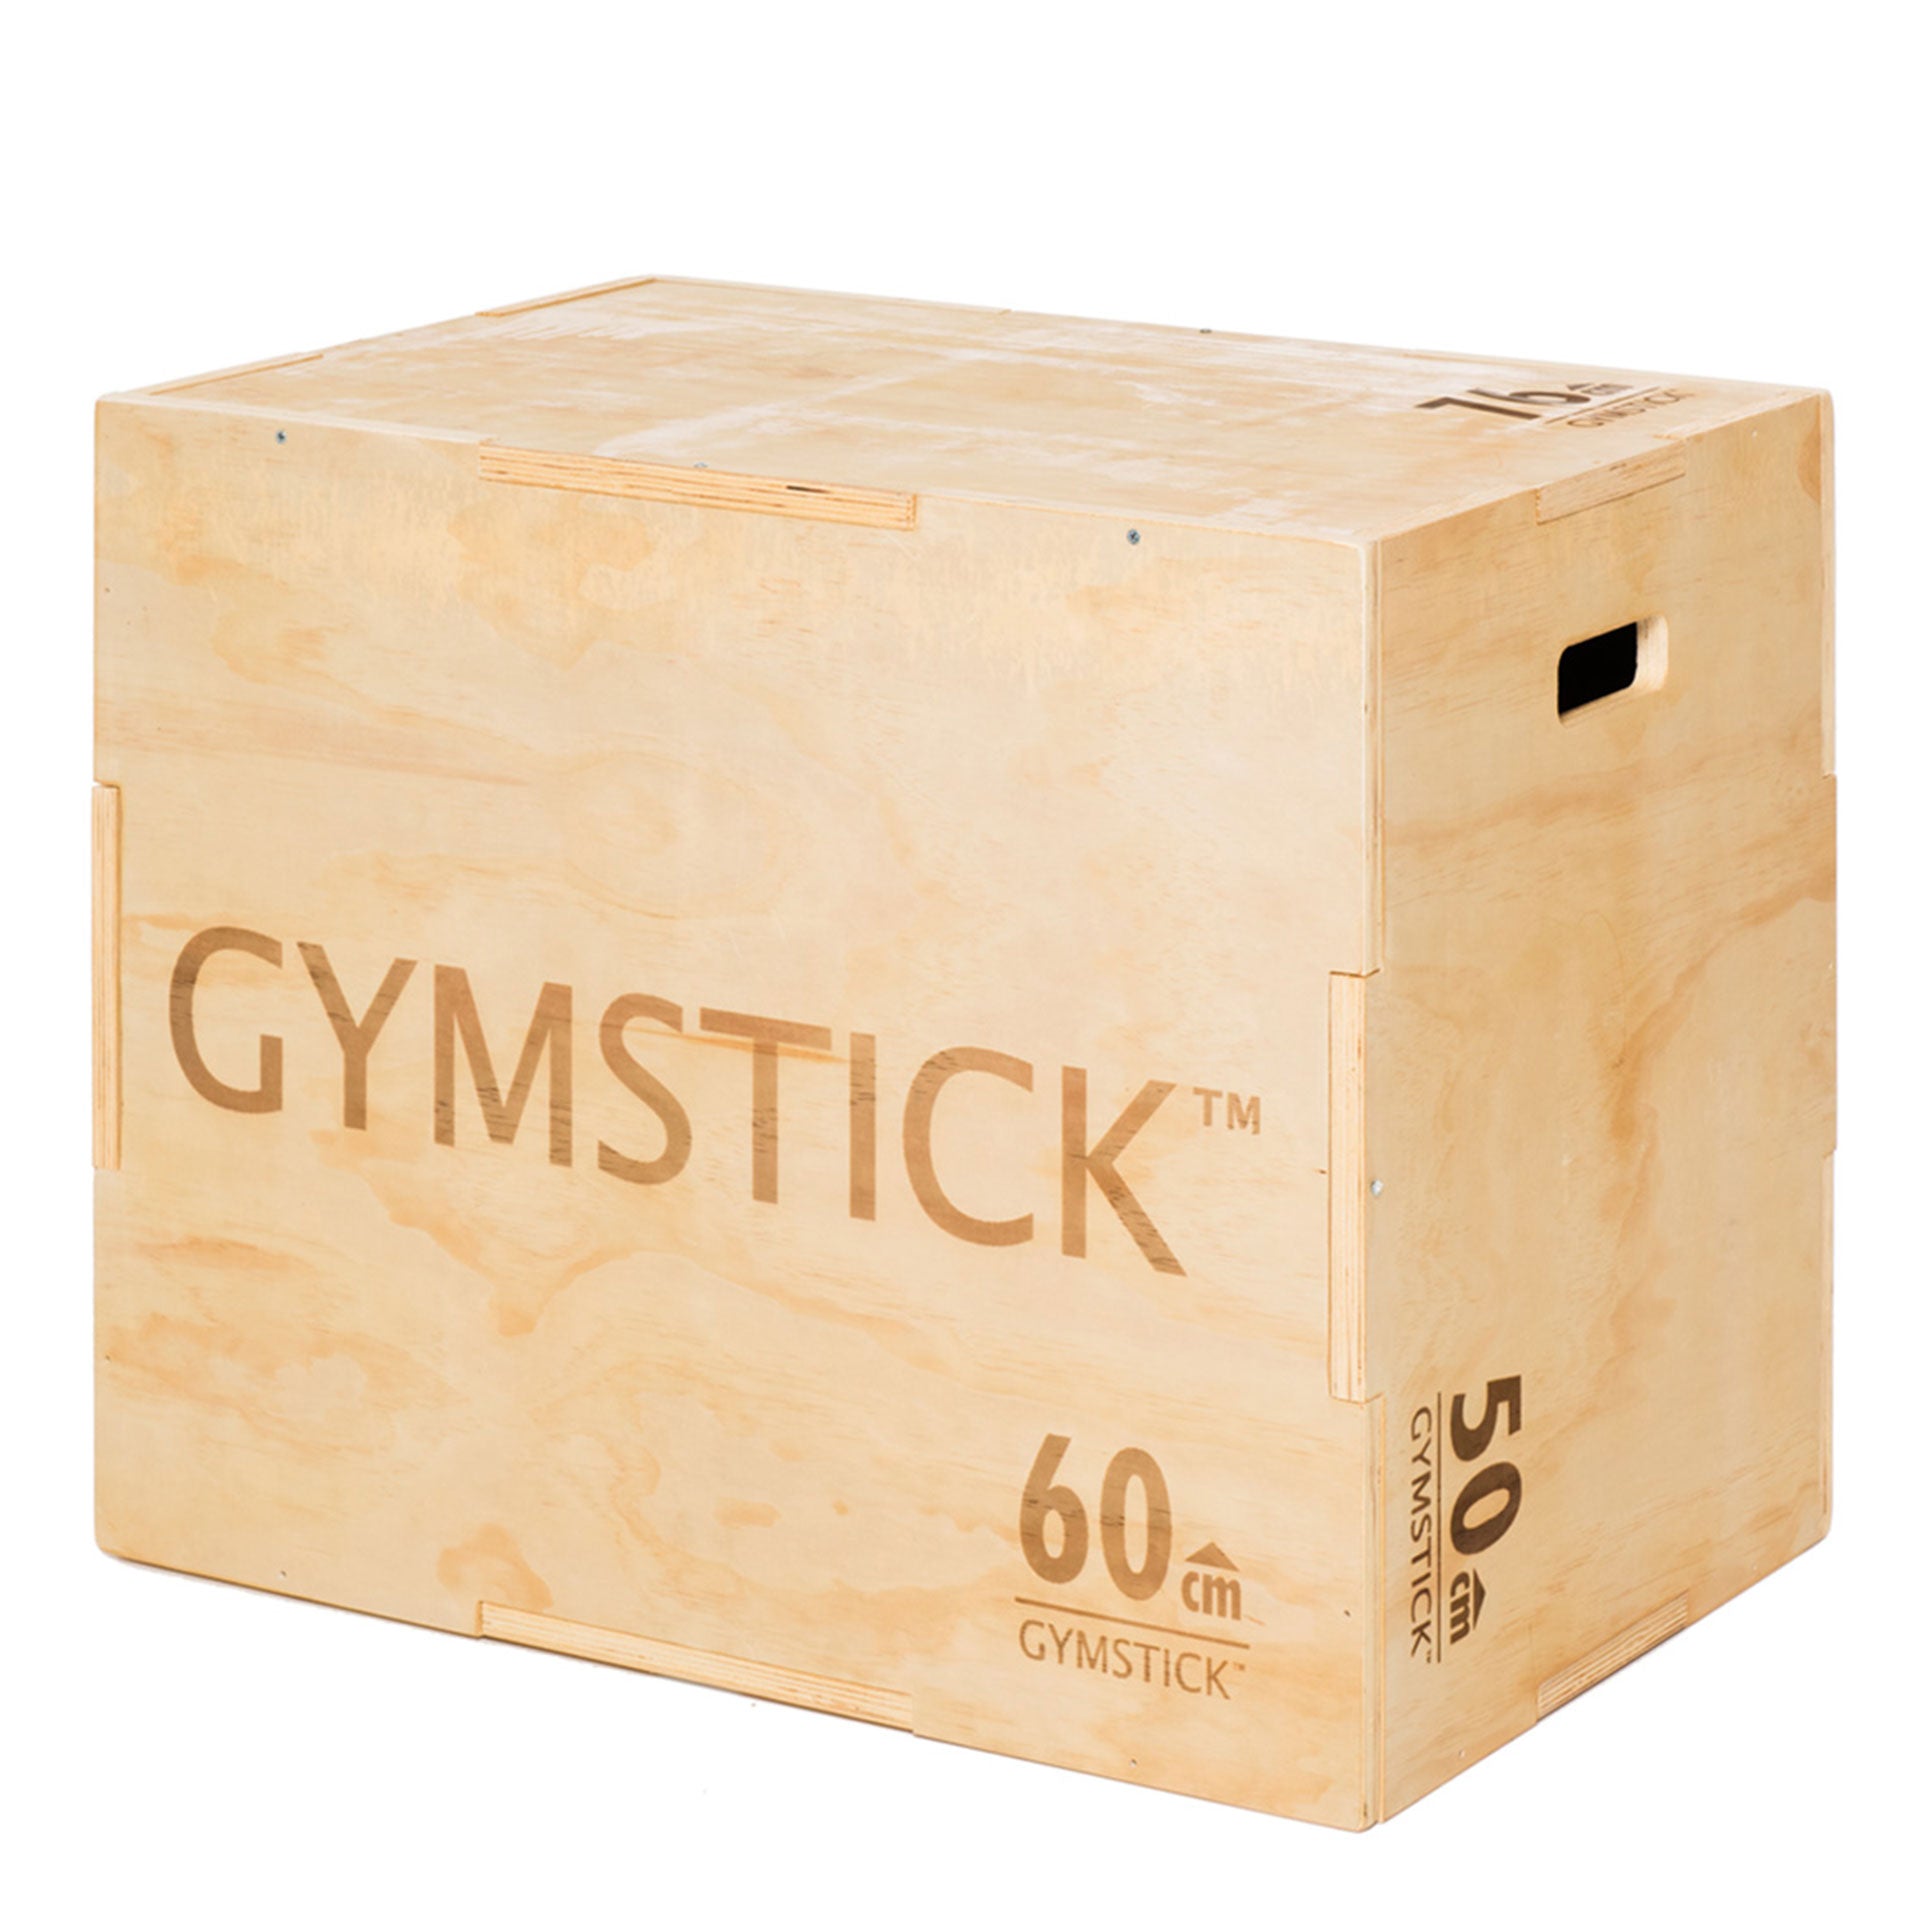 Plyobox Sprungkasten Gymstick   